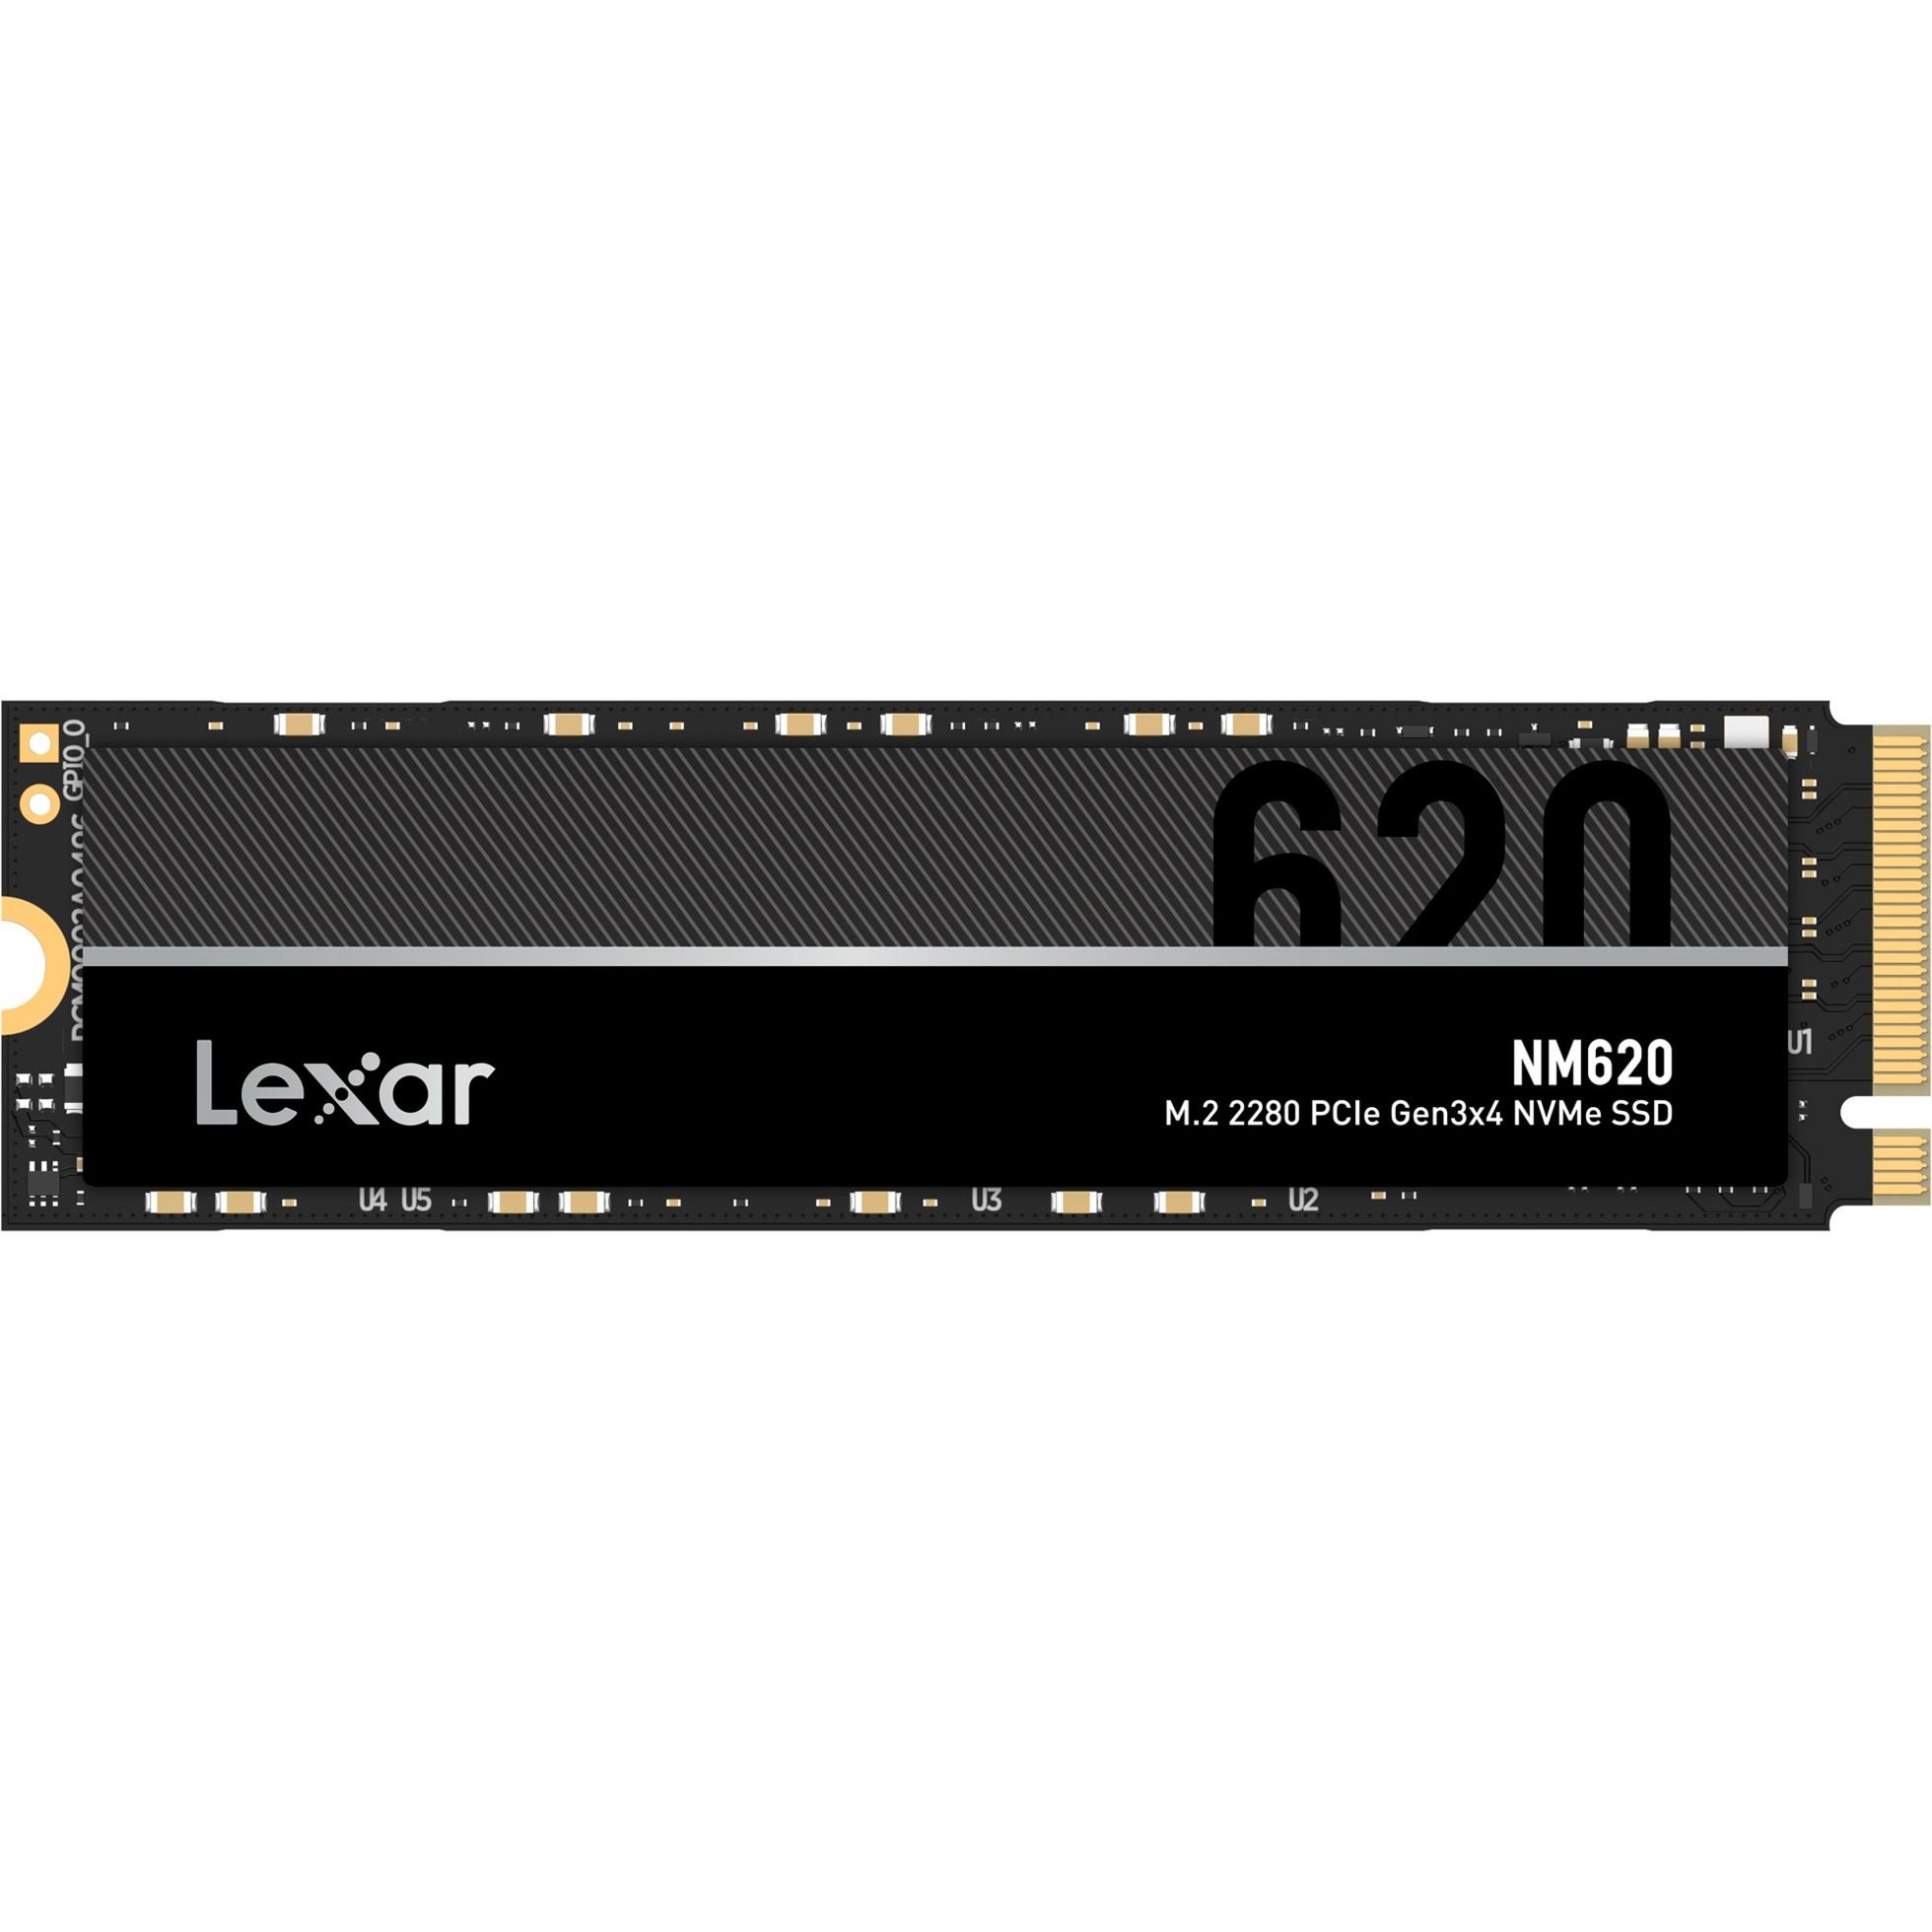 Lexar NM620 512GB SSD